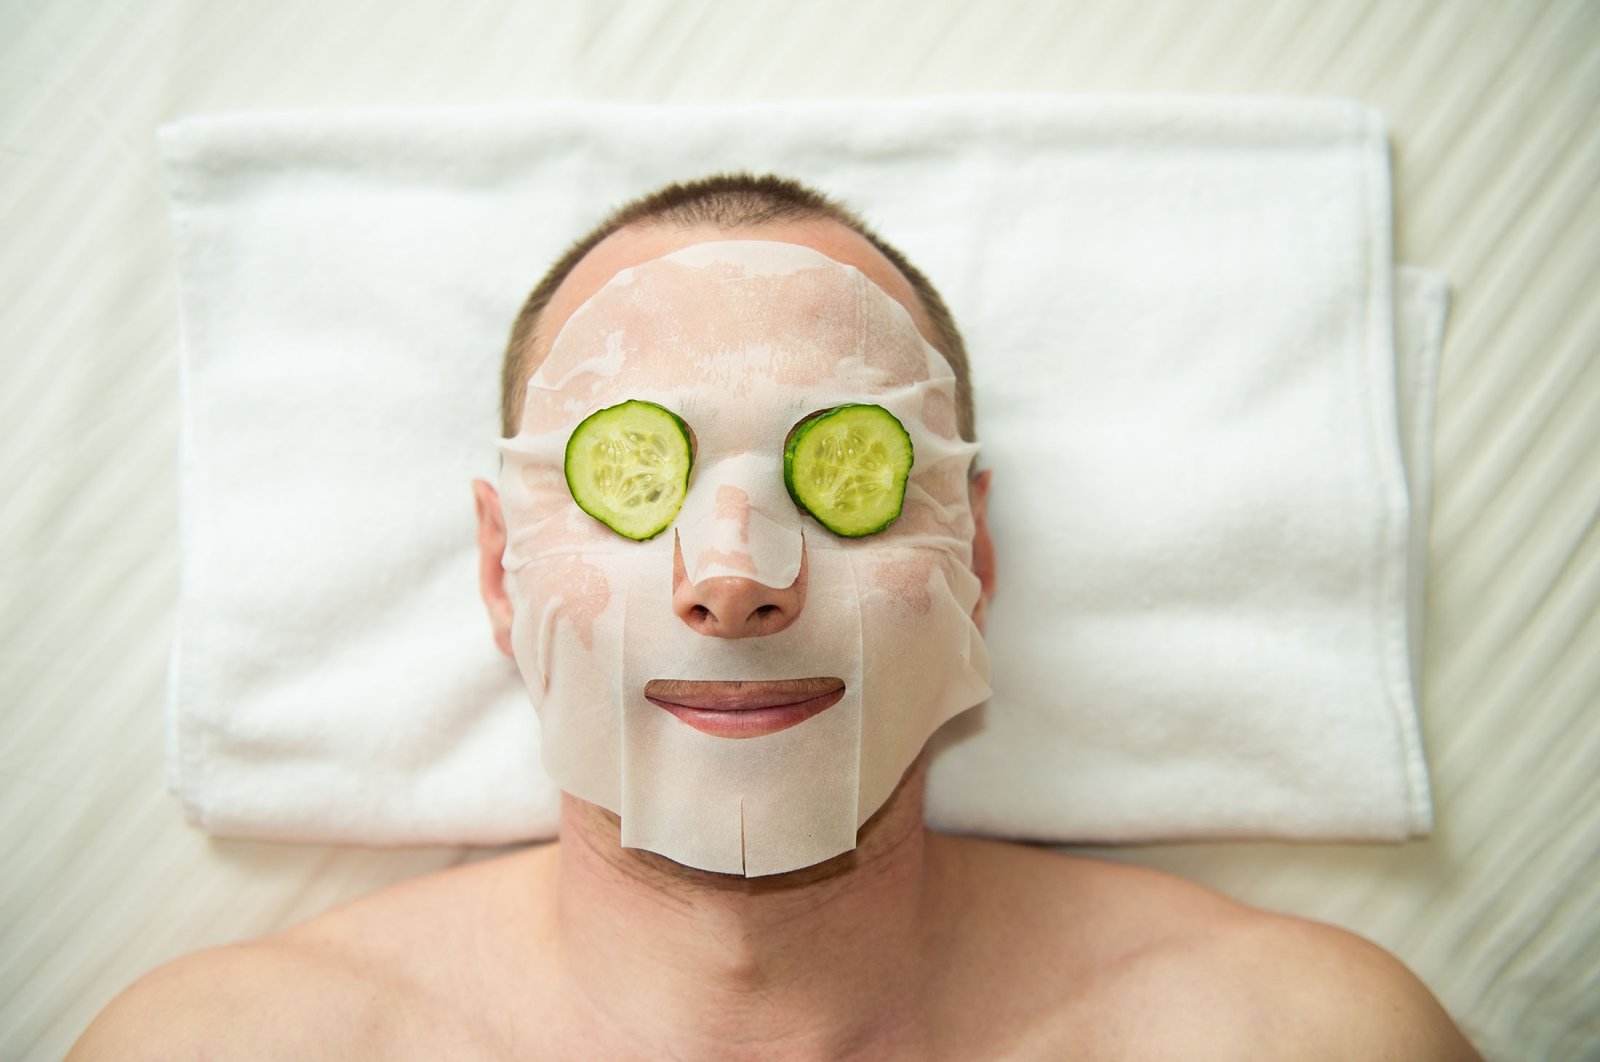 Musim dingin akan datang: Vitamin dan masker wajah, perawatan kulit itu penting